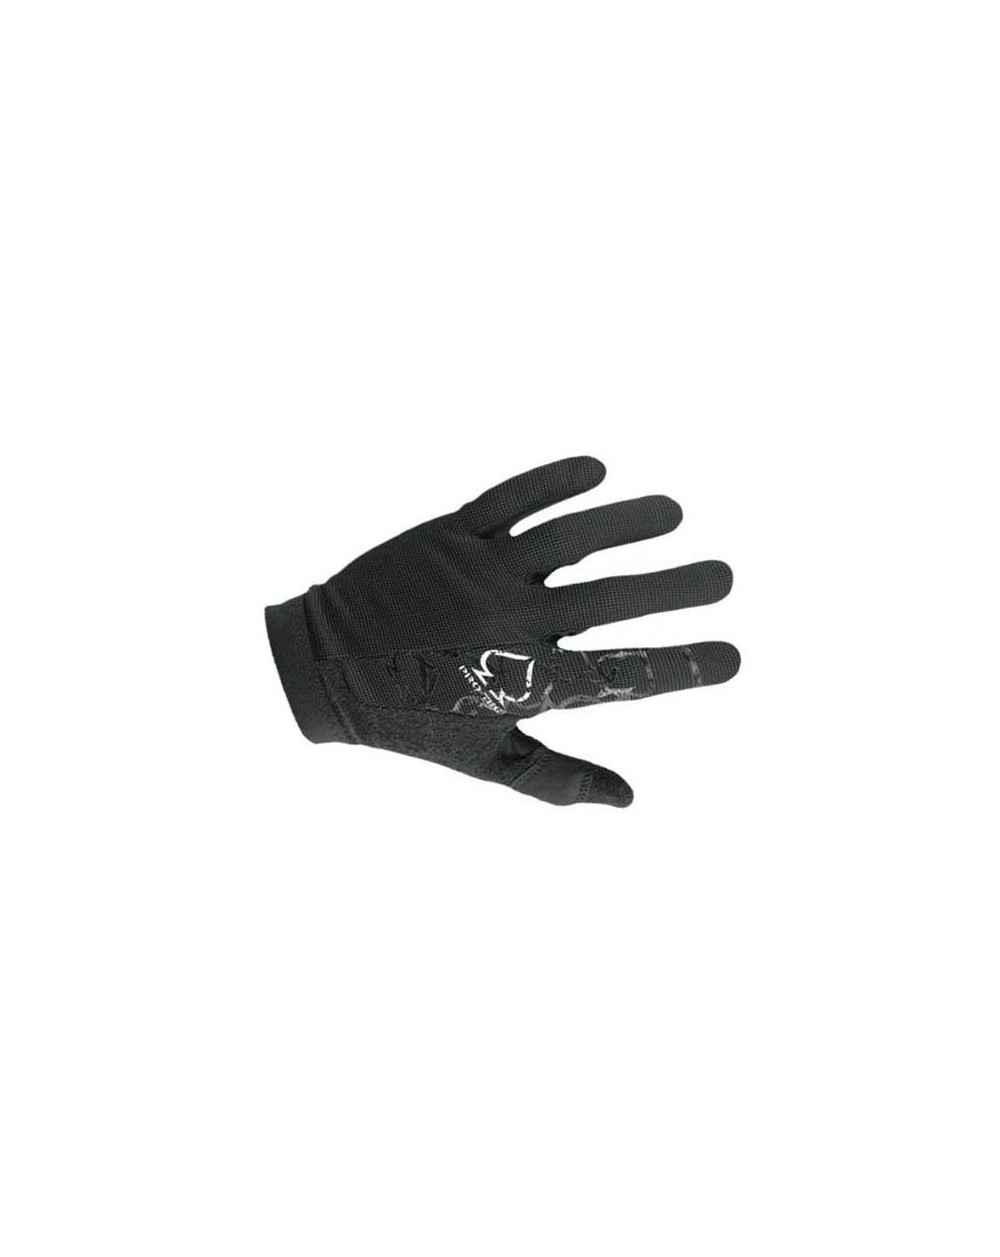 Pro-Tec Hi-5 Glove Black